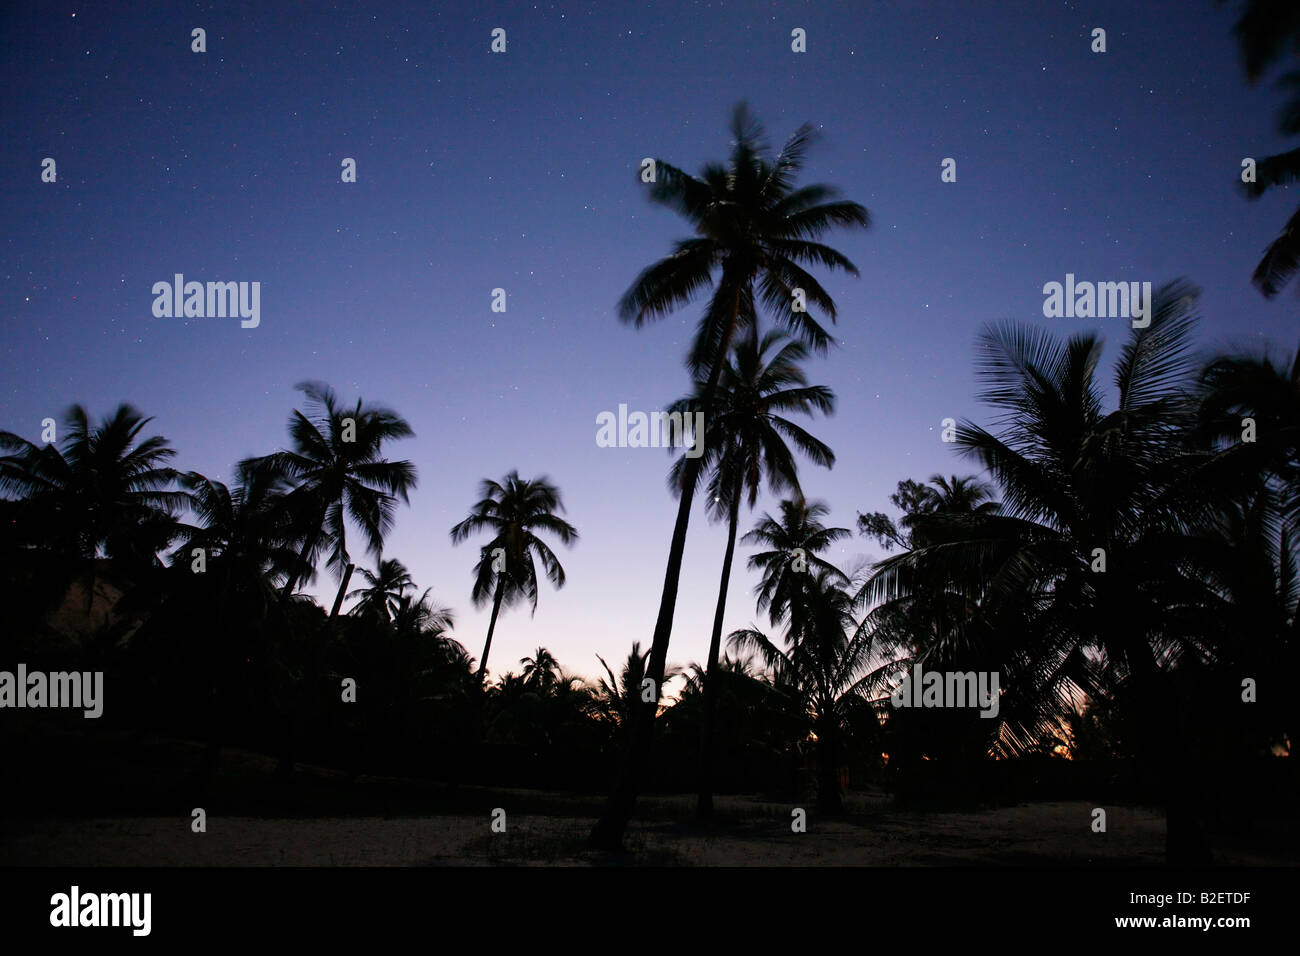 Stagliano palme di cocco di notte con una stelle che brillano nel cielo notturno Foto Stock